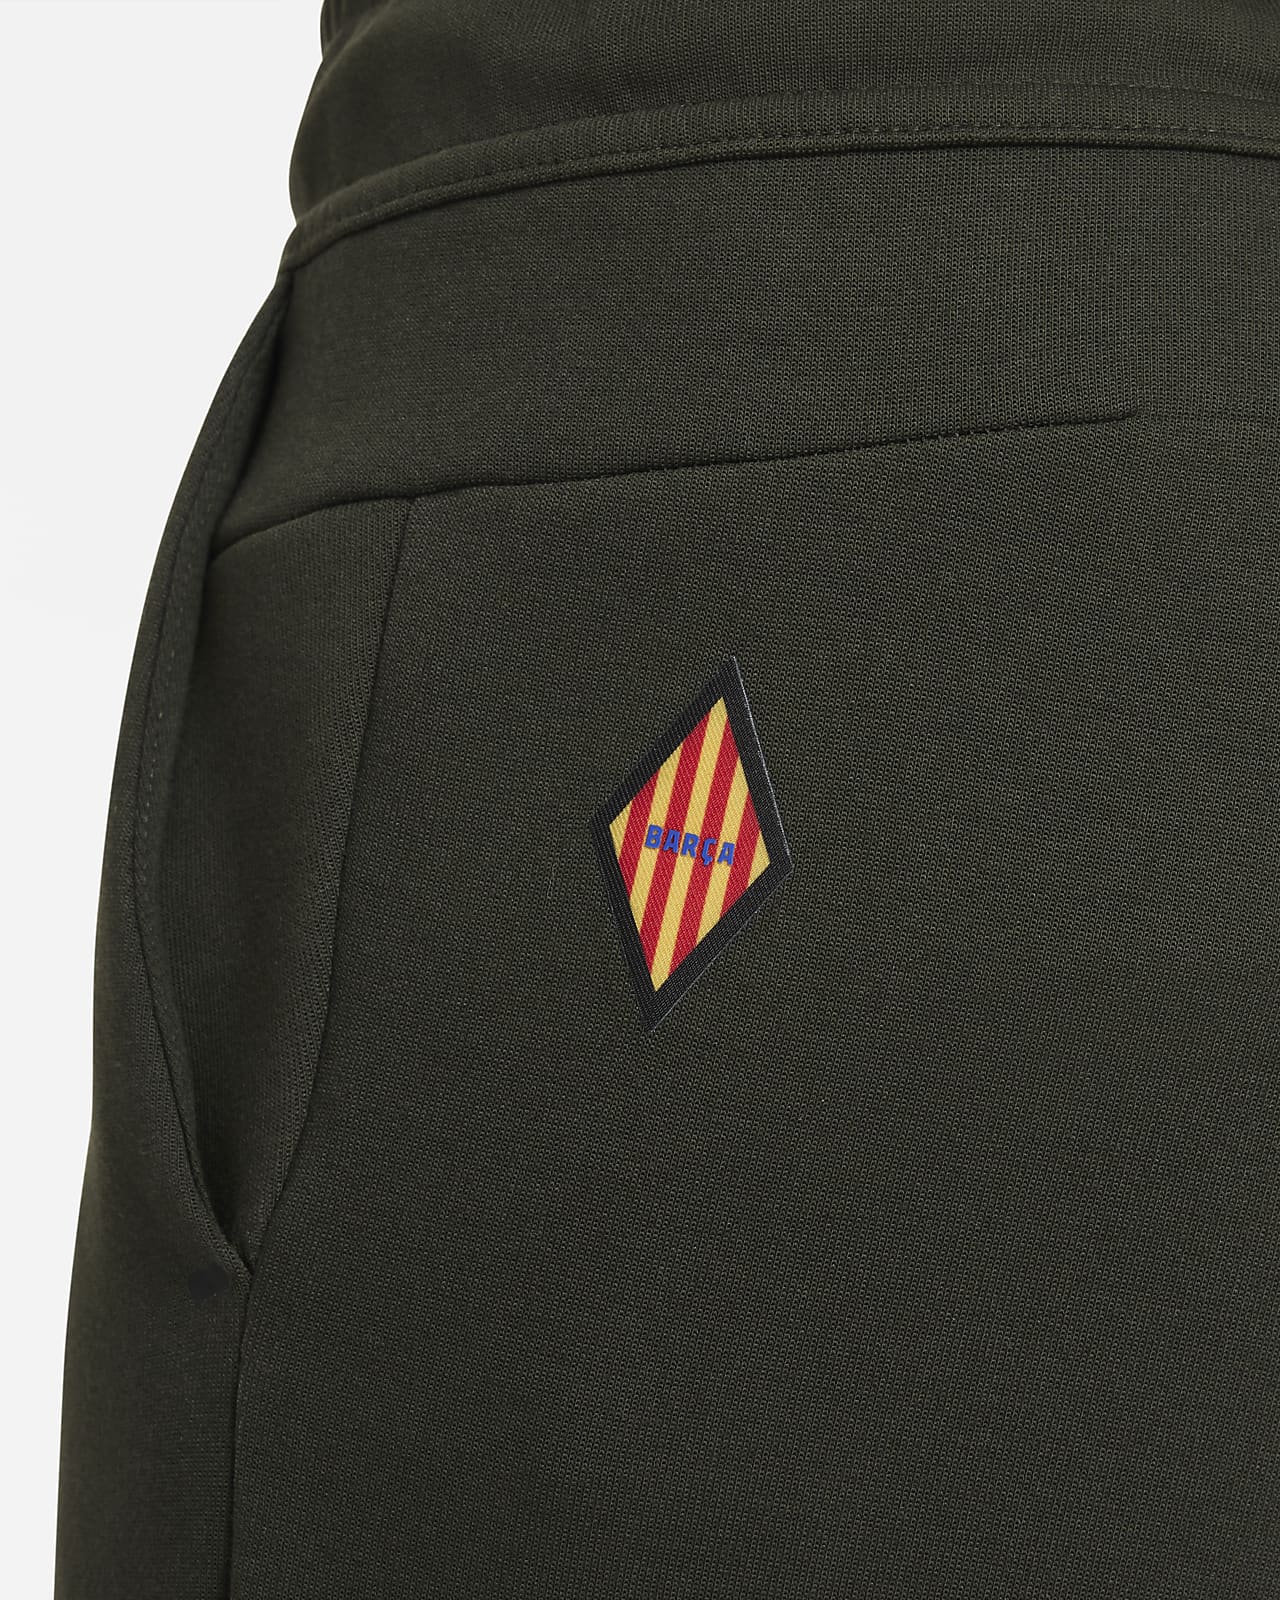 F.C. Barcelona Tech Fleece Older Kids' (Boys') Nike Trousers